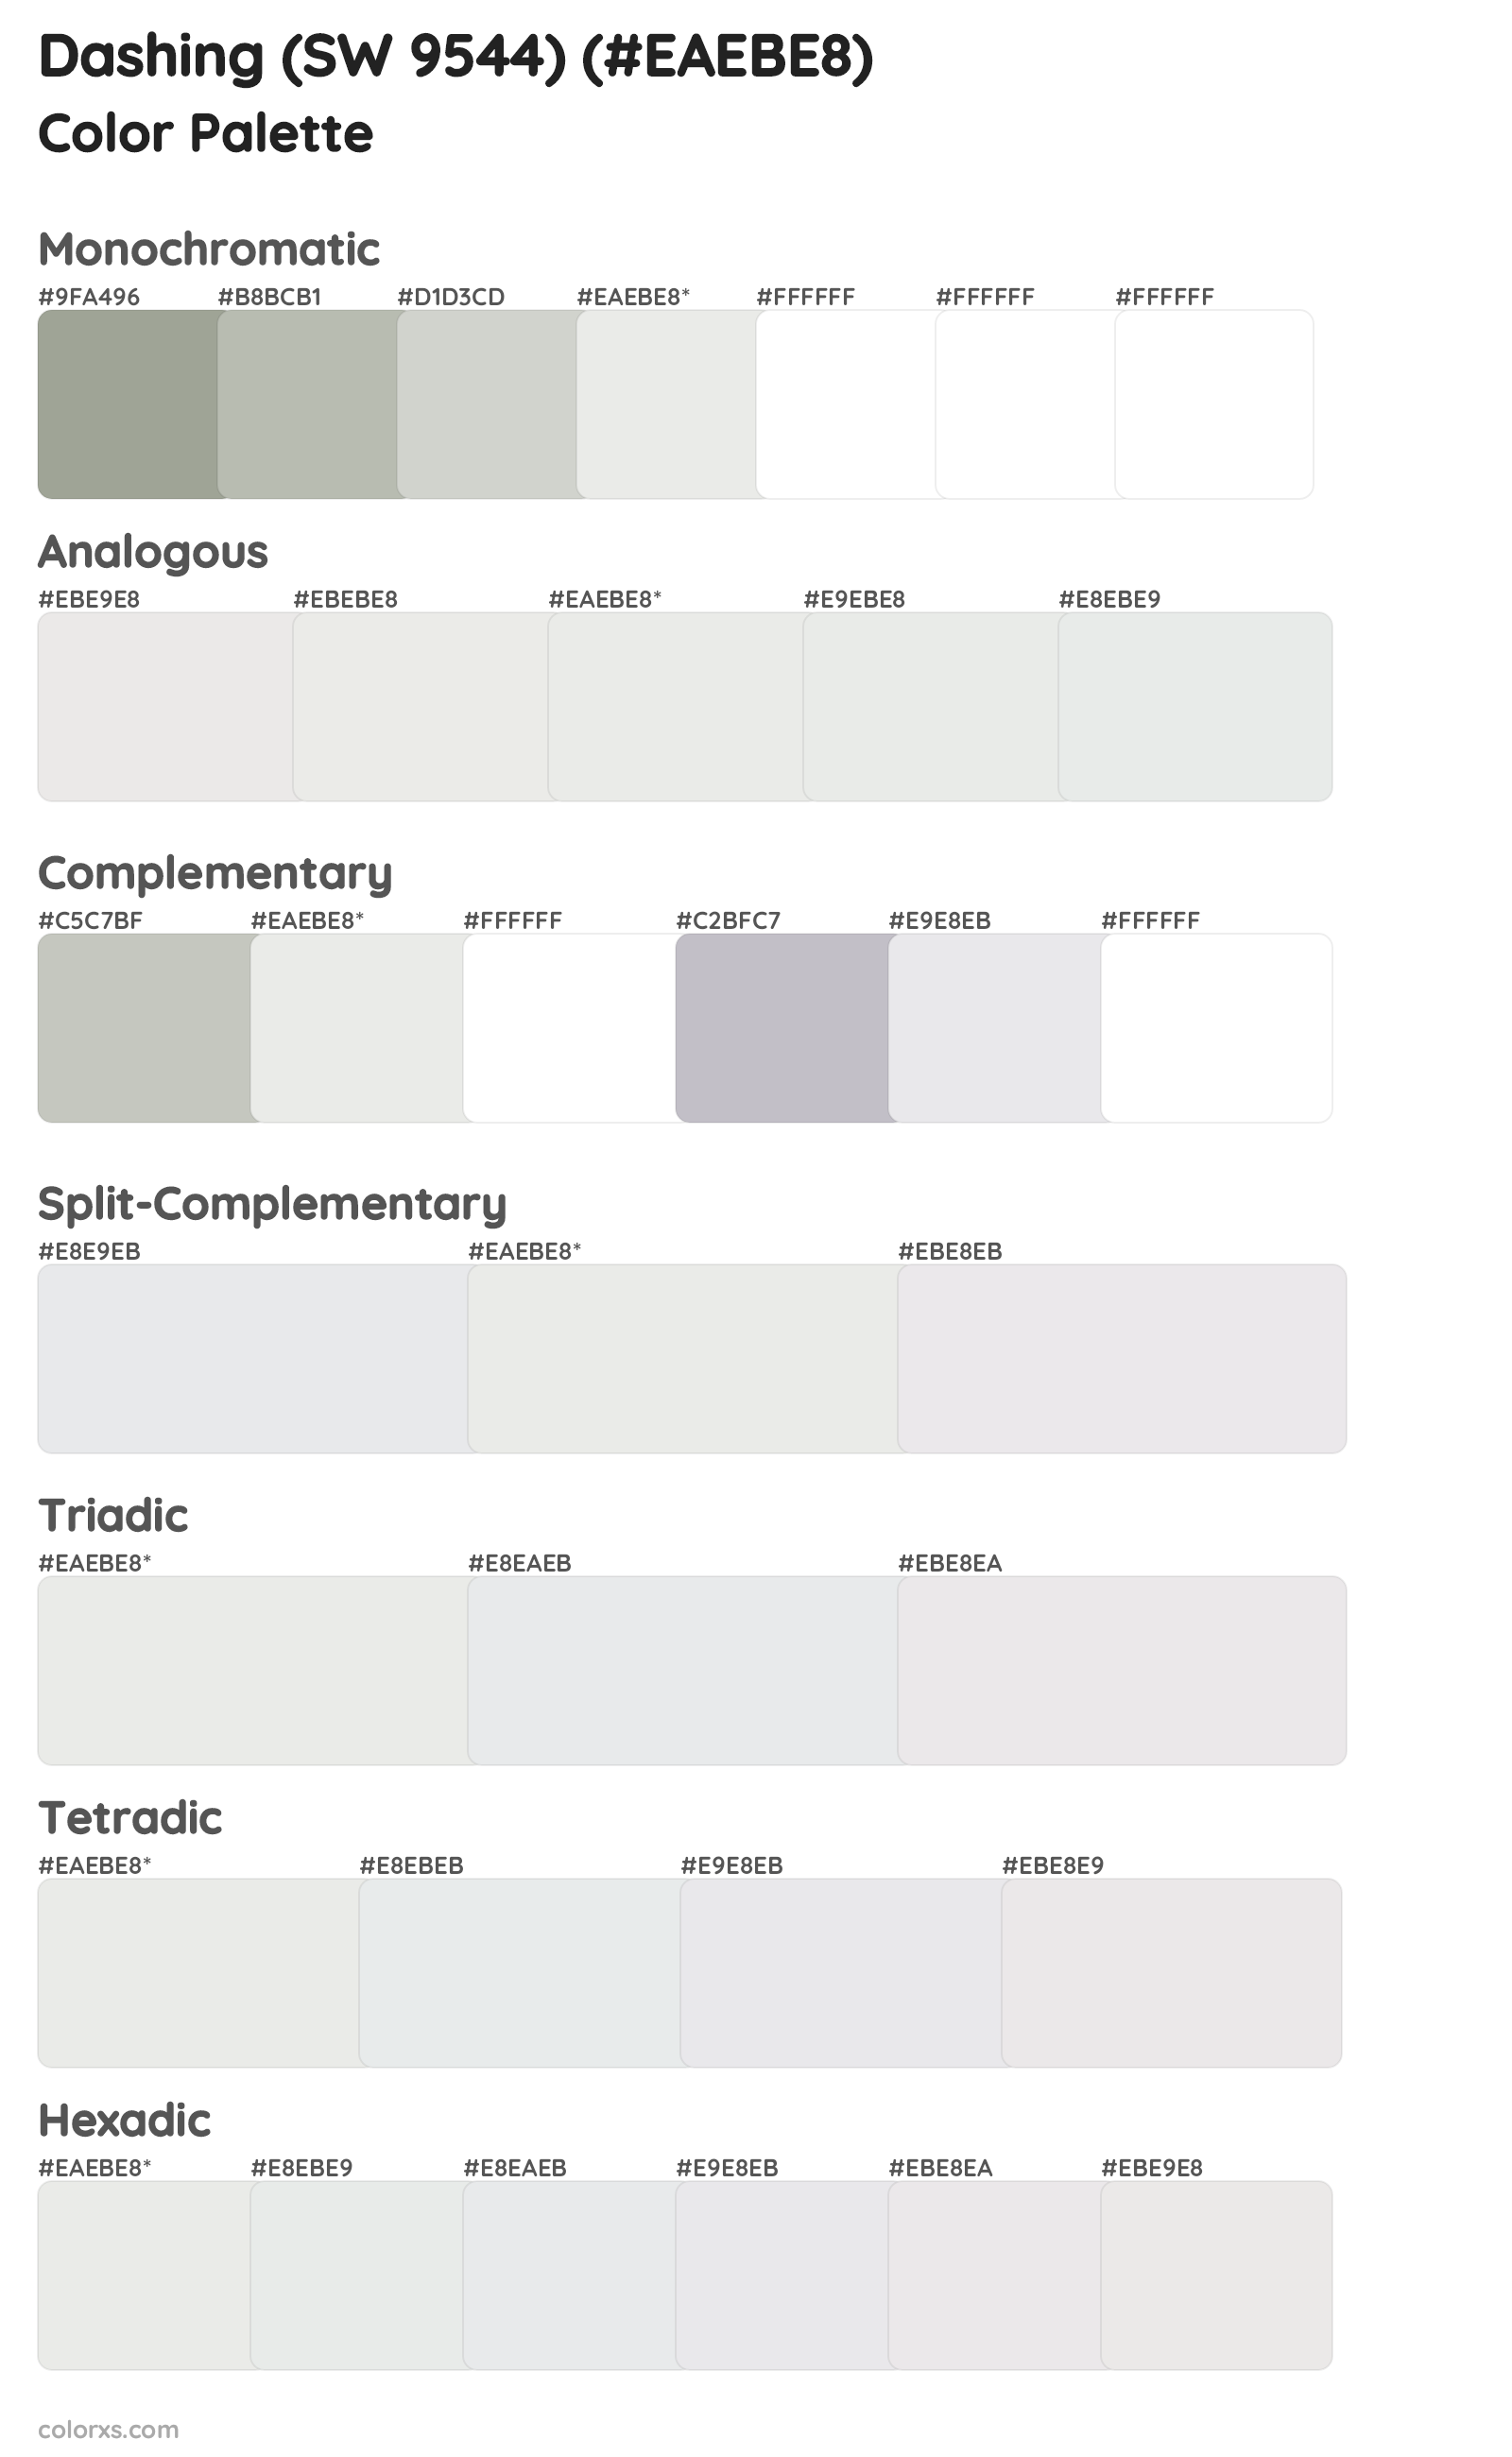 Dashing (SW 9544) Color Scheme Palettes